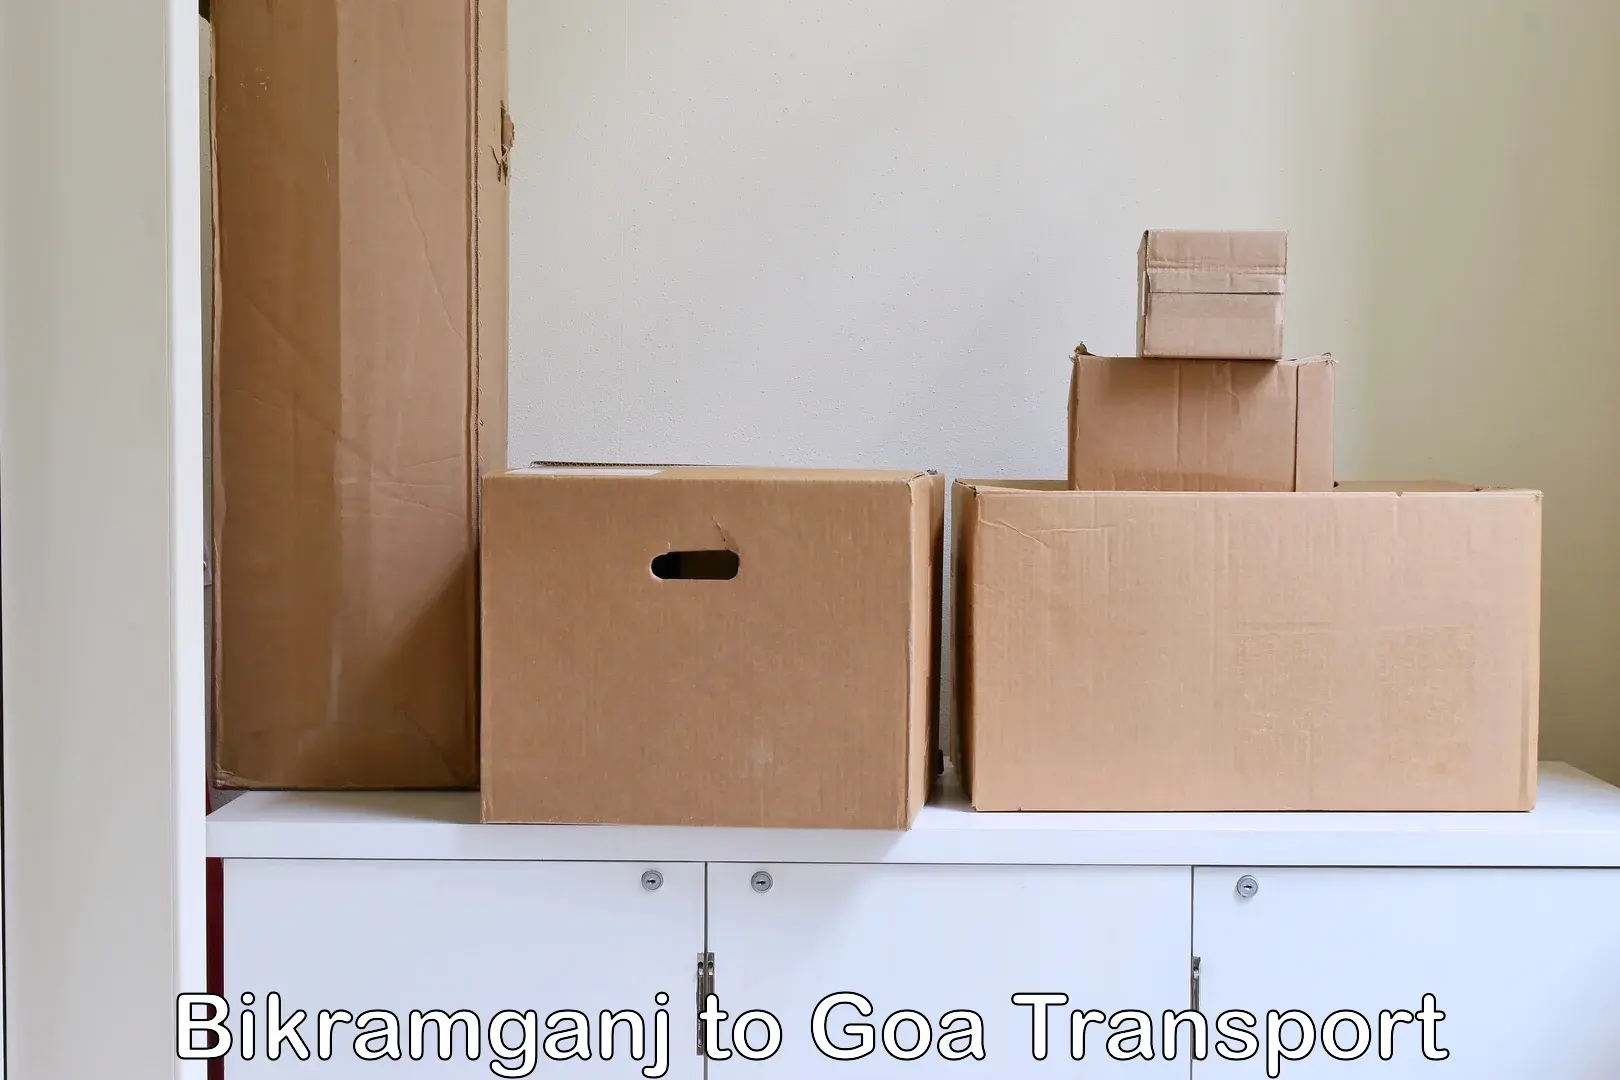 Transport in sharing Bikramganj to Vasco da Gama